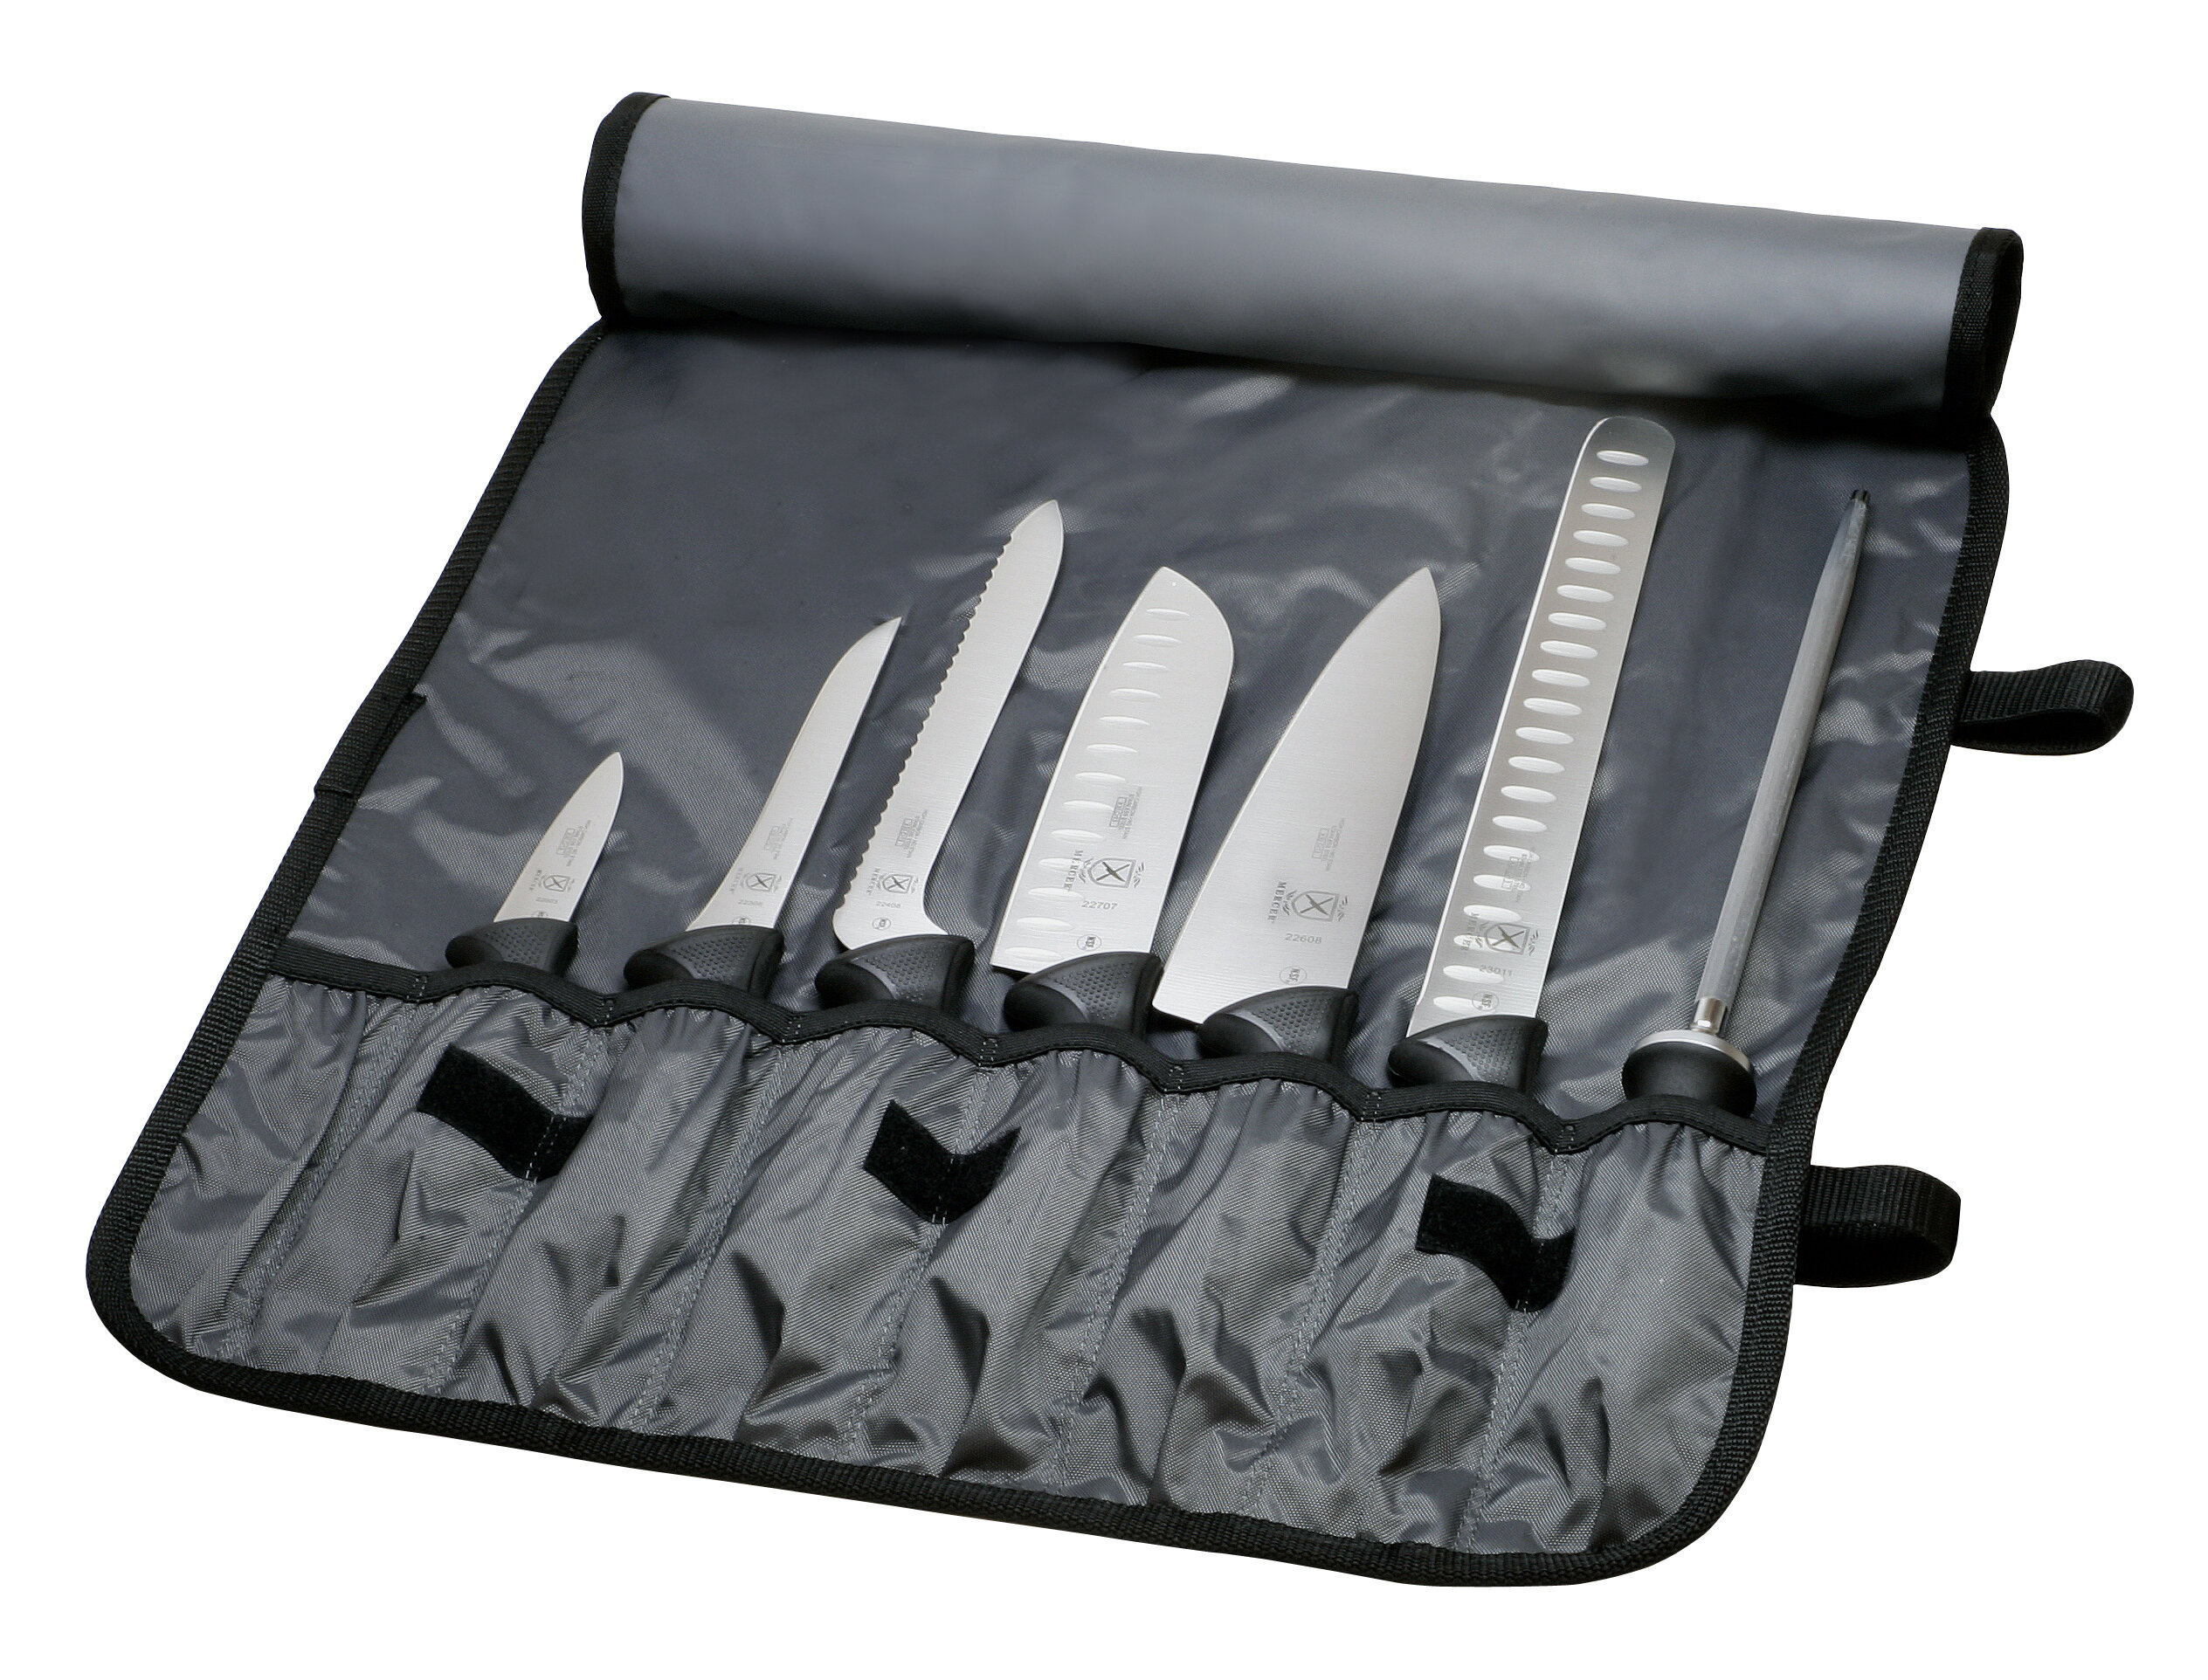 https://assets.wfcdn.com/im/81512249/compr-r85/5291/5291064/mercer-cutlery-millennia-8-piece-stainless-steel-assorted-knife-set.jpg